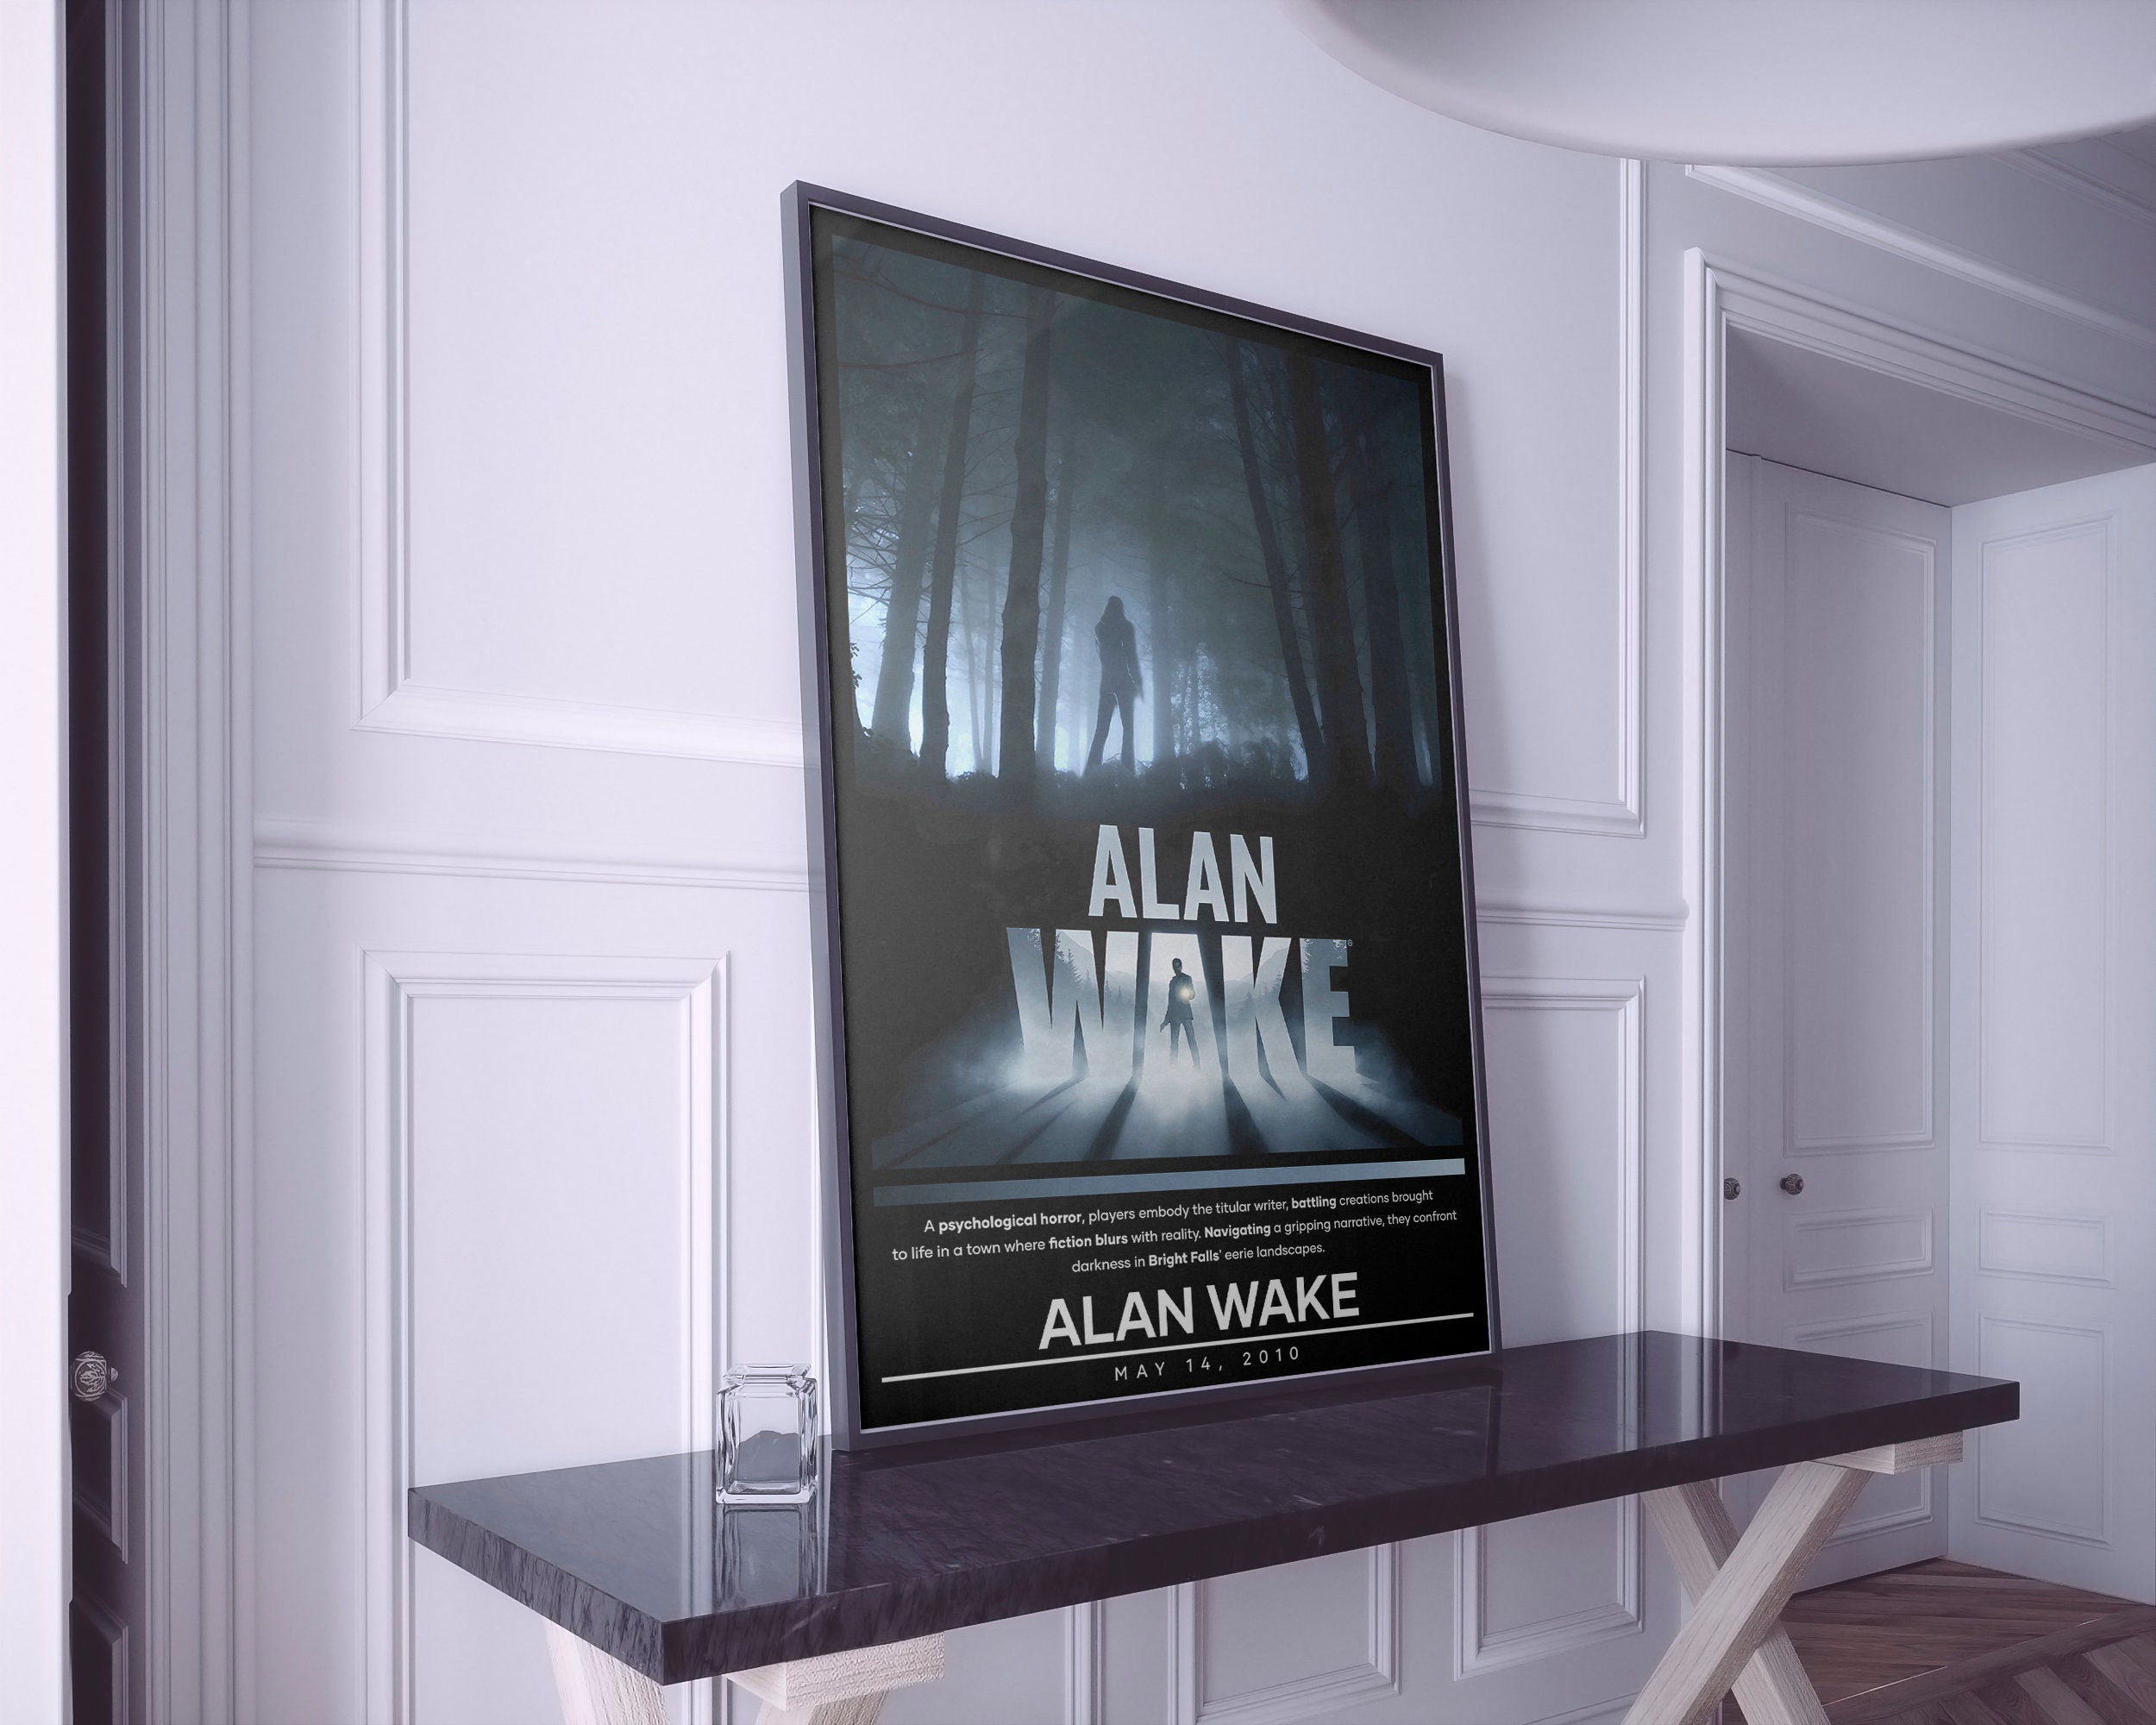 Alan Wake Poster, Alan Wake Gaming Poster